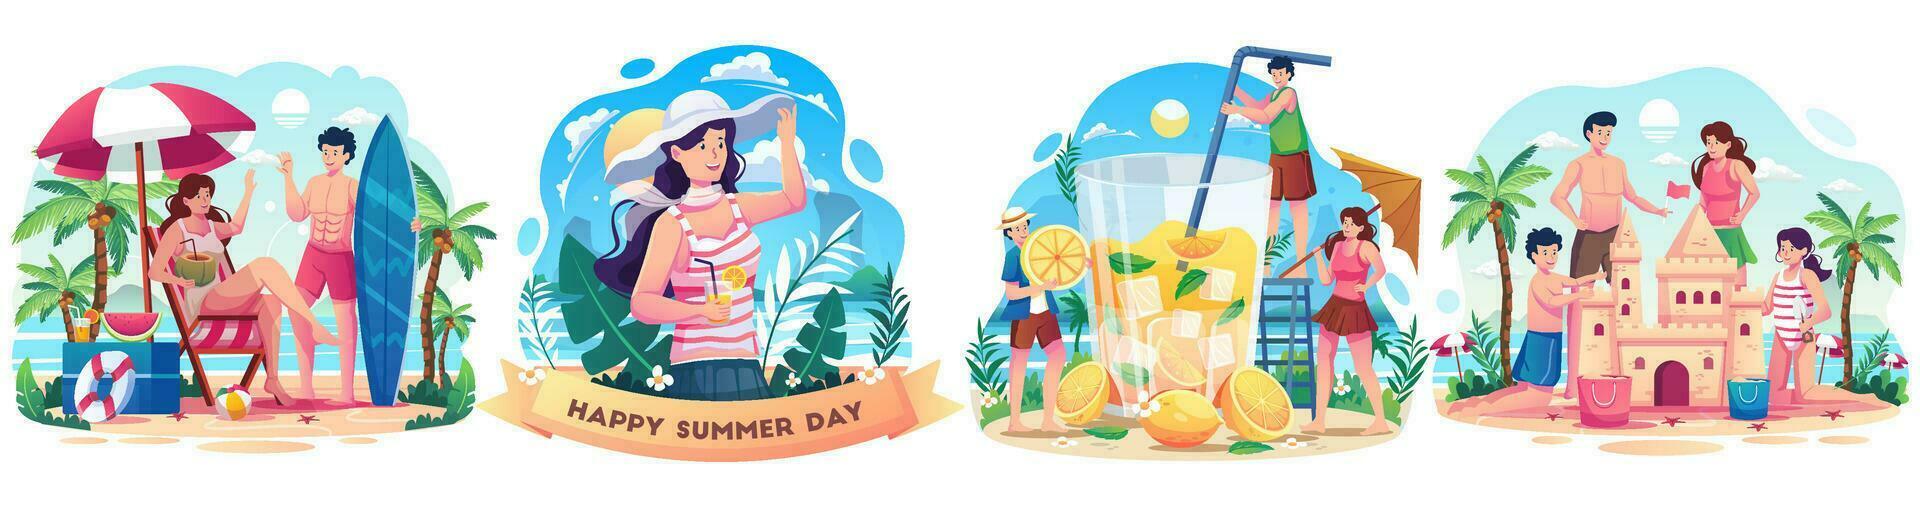 set di concetto estivo con persone che si godono le vacanze durante l'estate. persone felici che giocano sulla spiaggia. illustrazione vettoriale in stile piatto